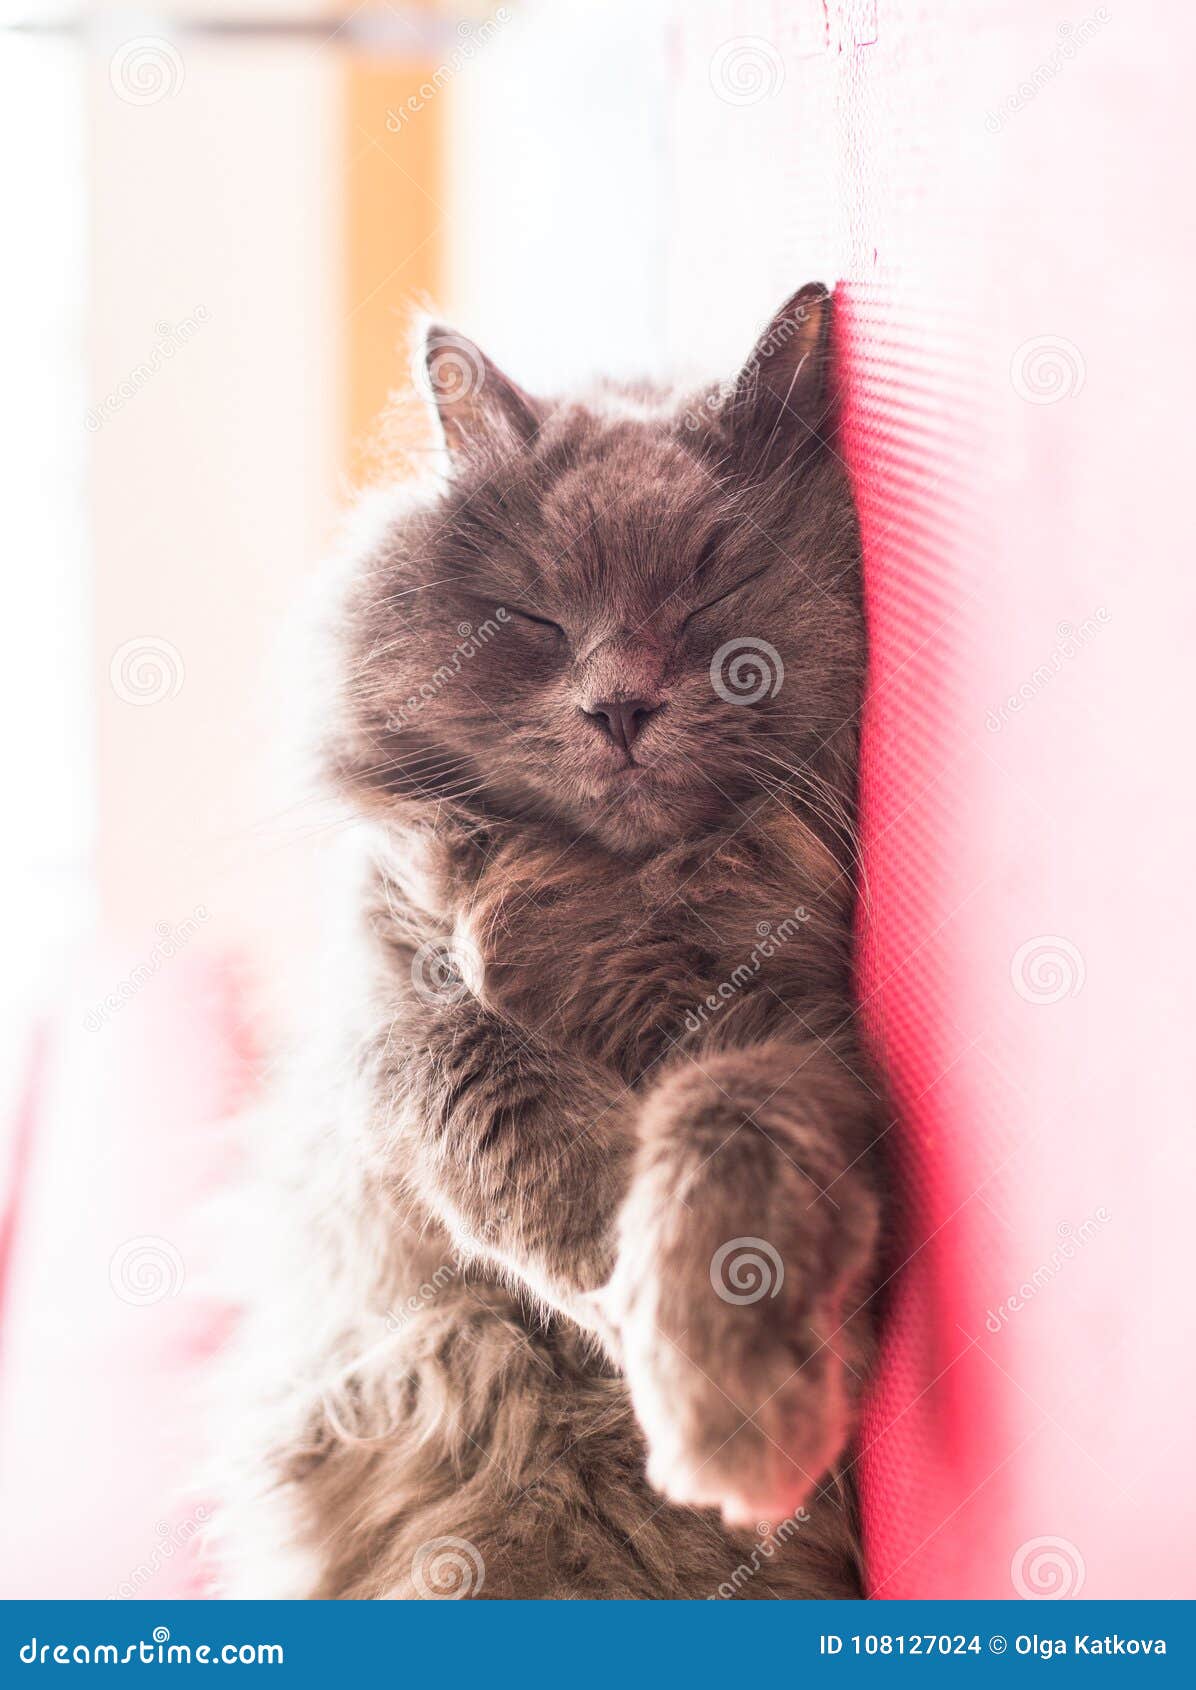 face of sleeping cute grey cat